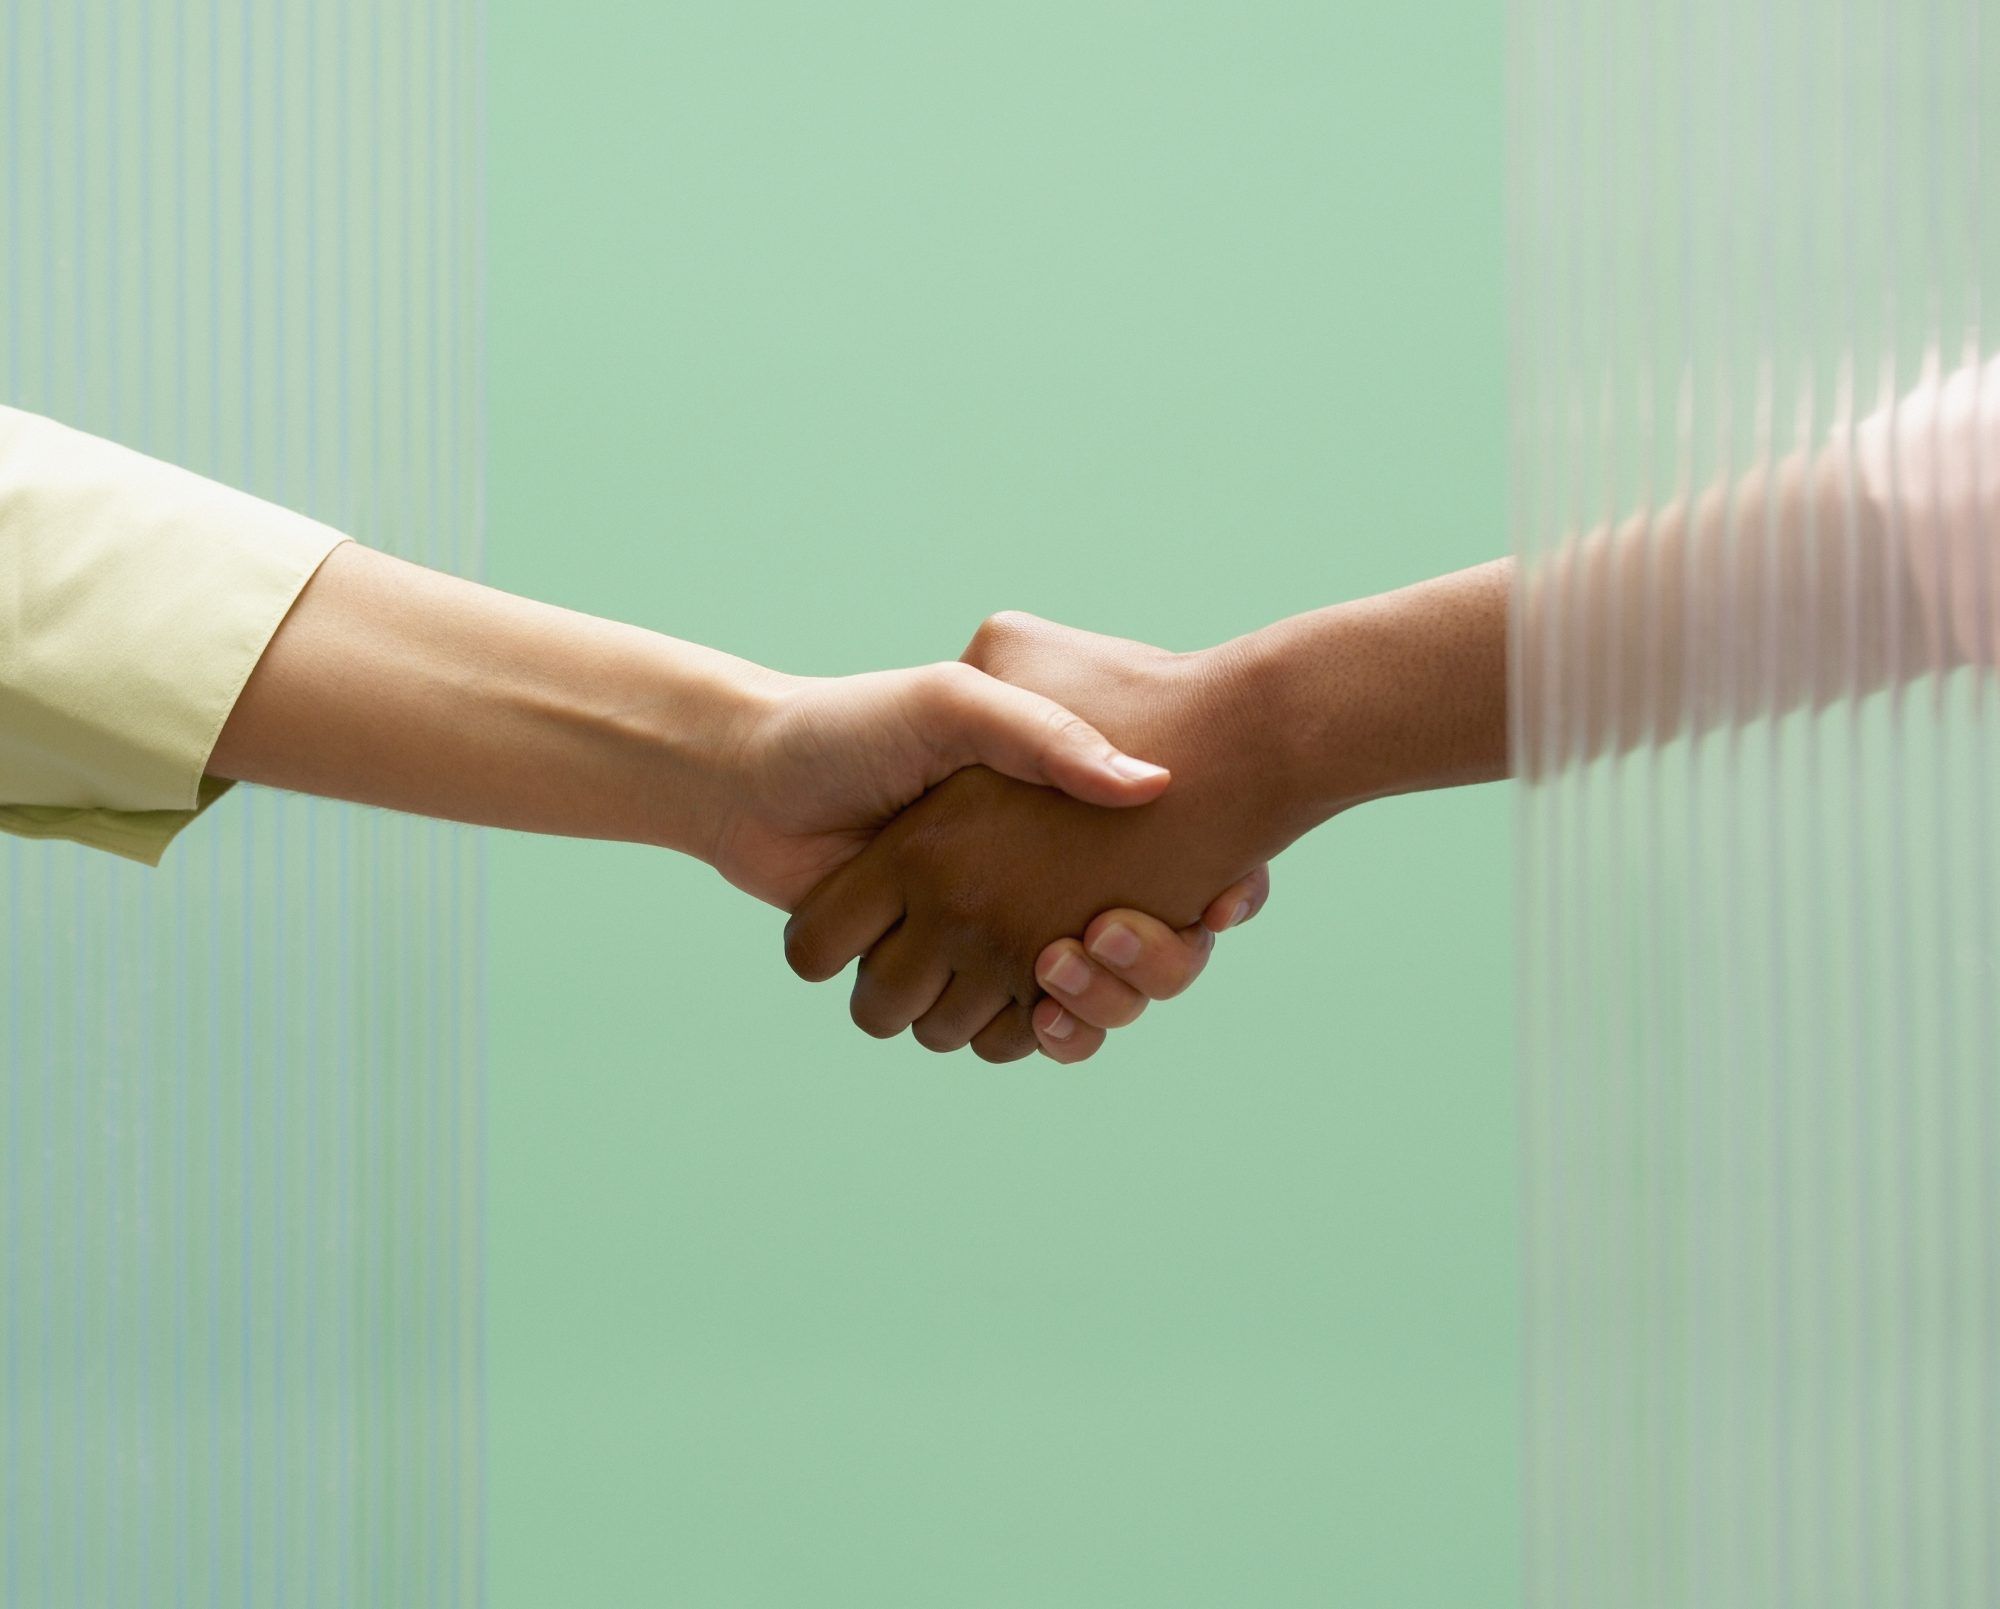 Comment faire le suivi après un entretien d'embauche : deux personnes se serrant la main sur fond vert